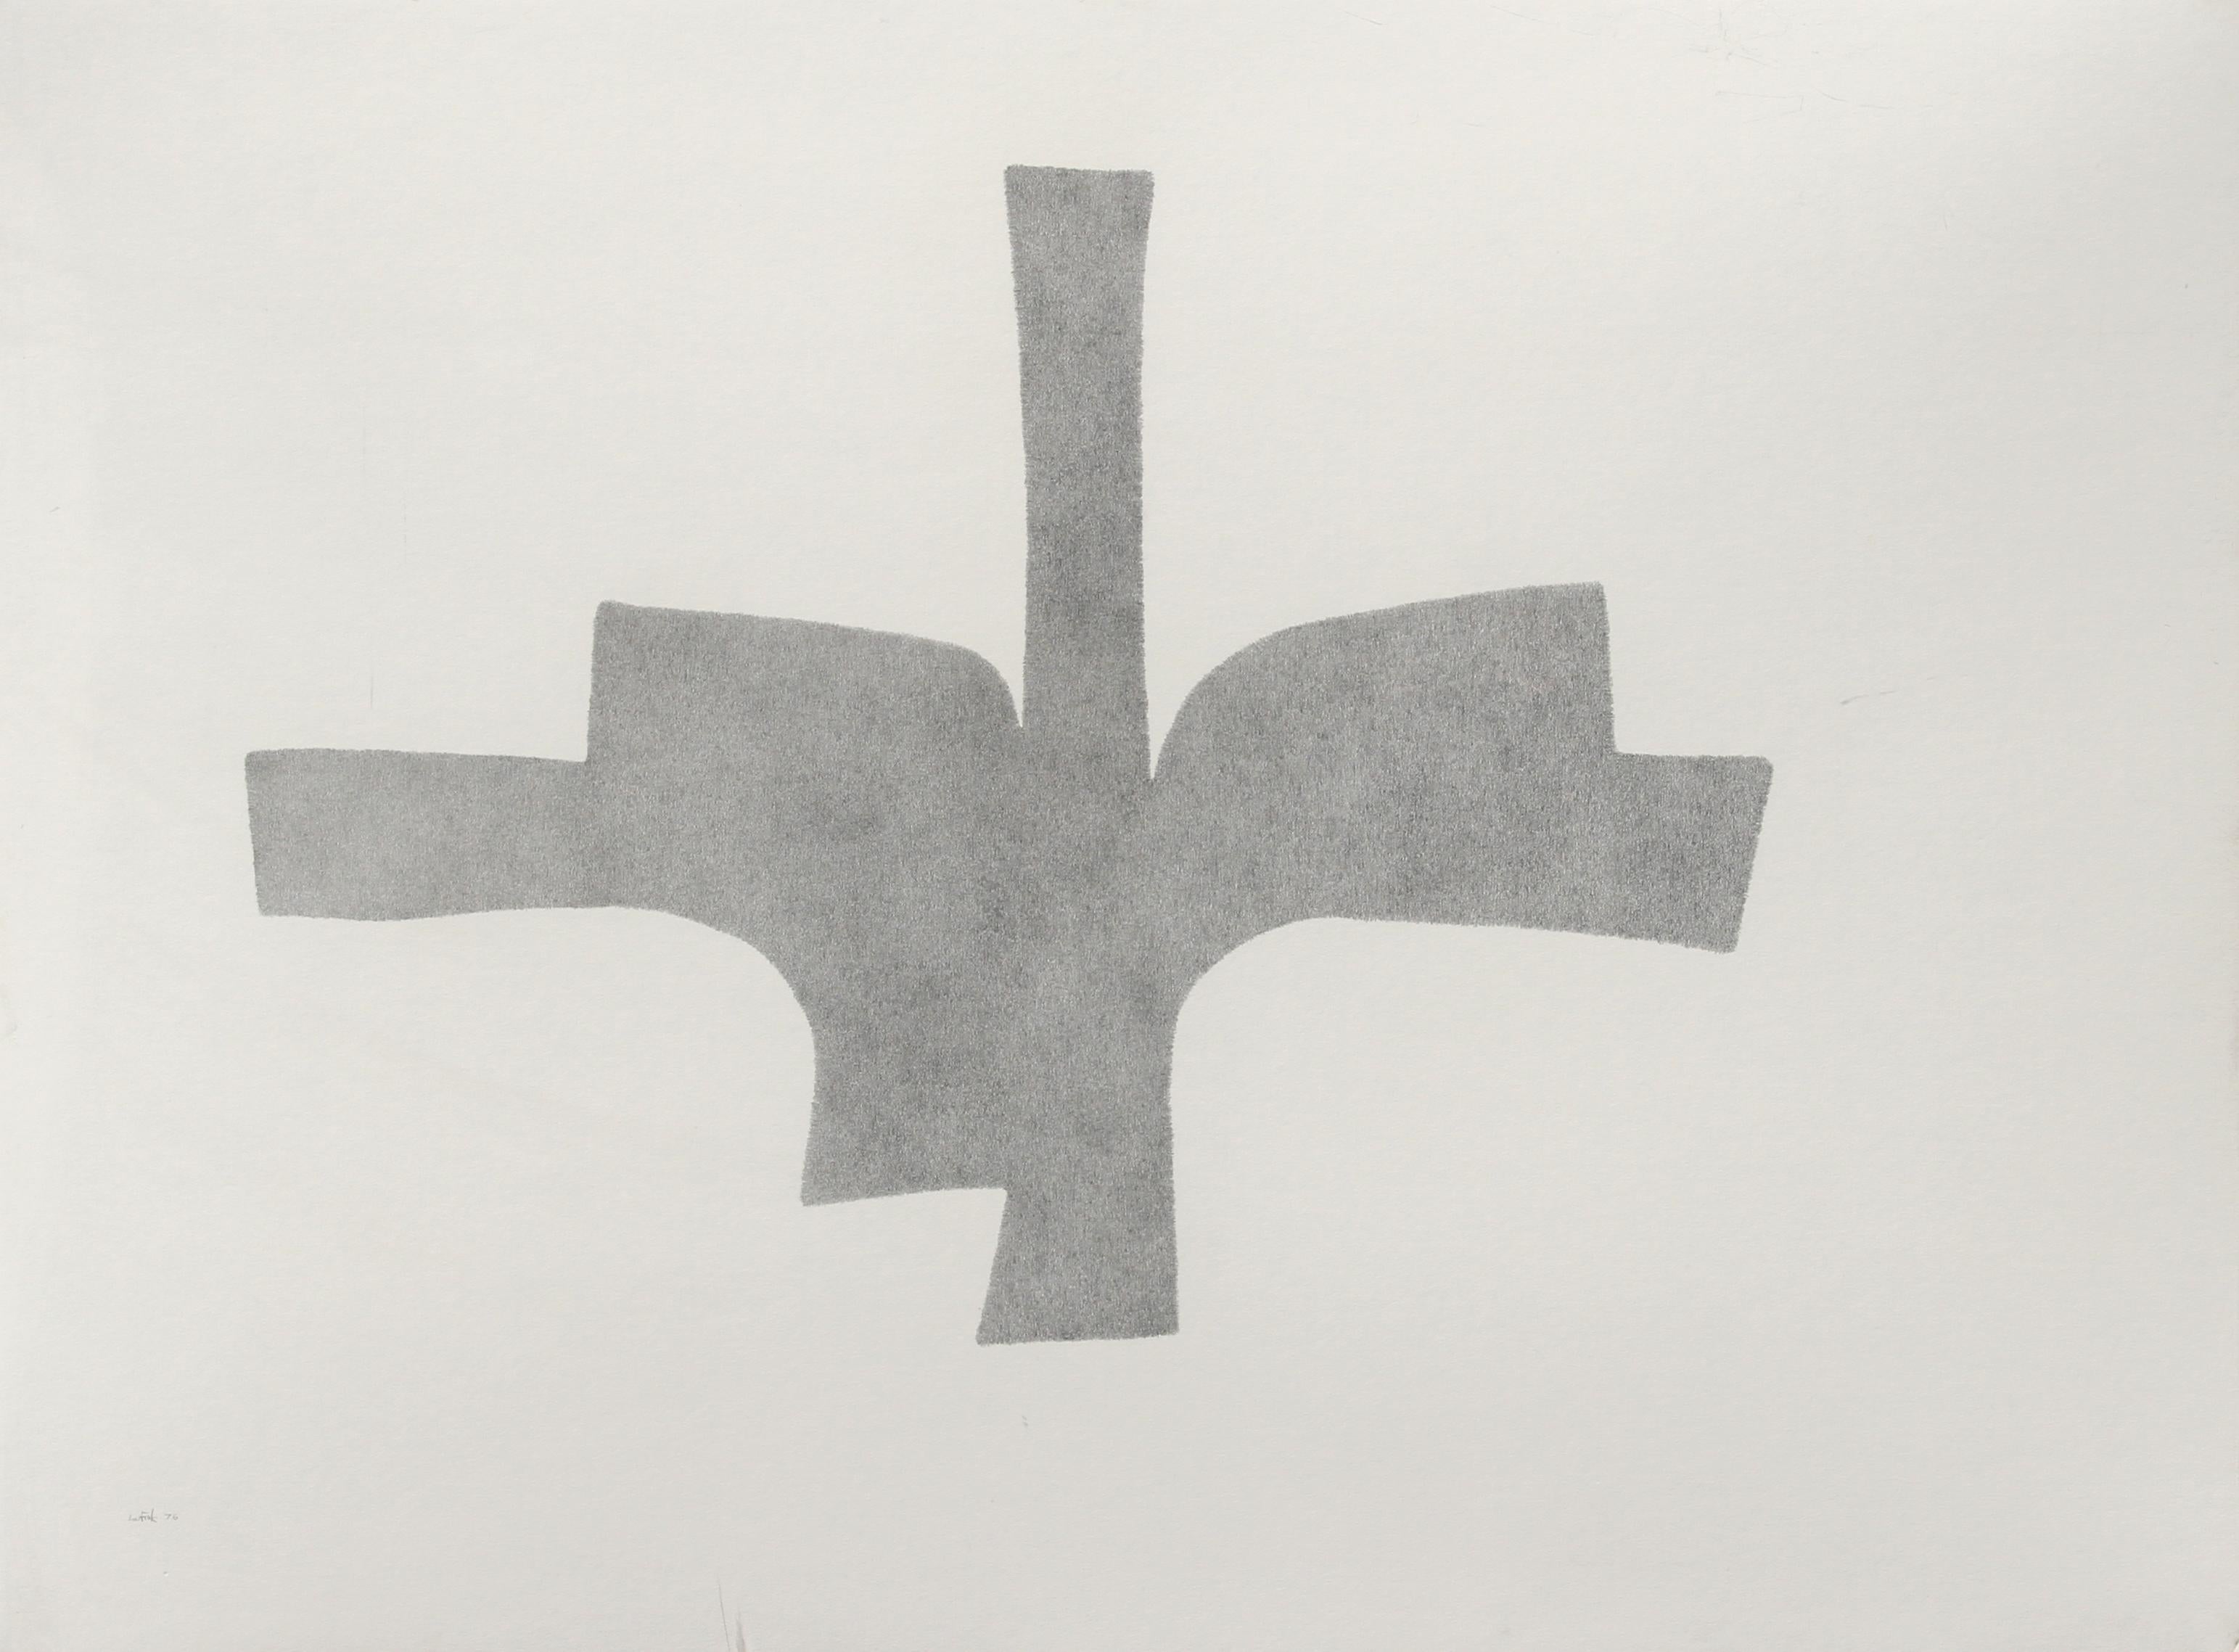 Künstler: Lou Fink, Amerikaner (1925 - 1980)
Titel: Kondor
Jahr: 1976
Medium: Bleistift auf Papier, signiert und datiert v.l.n.r.
Größe: 30 in. x 40 in. (76,2 cm x 50,8 cm)